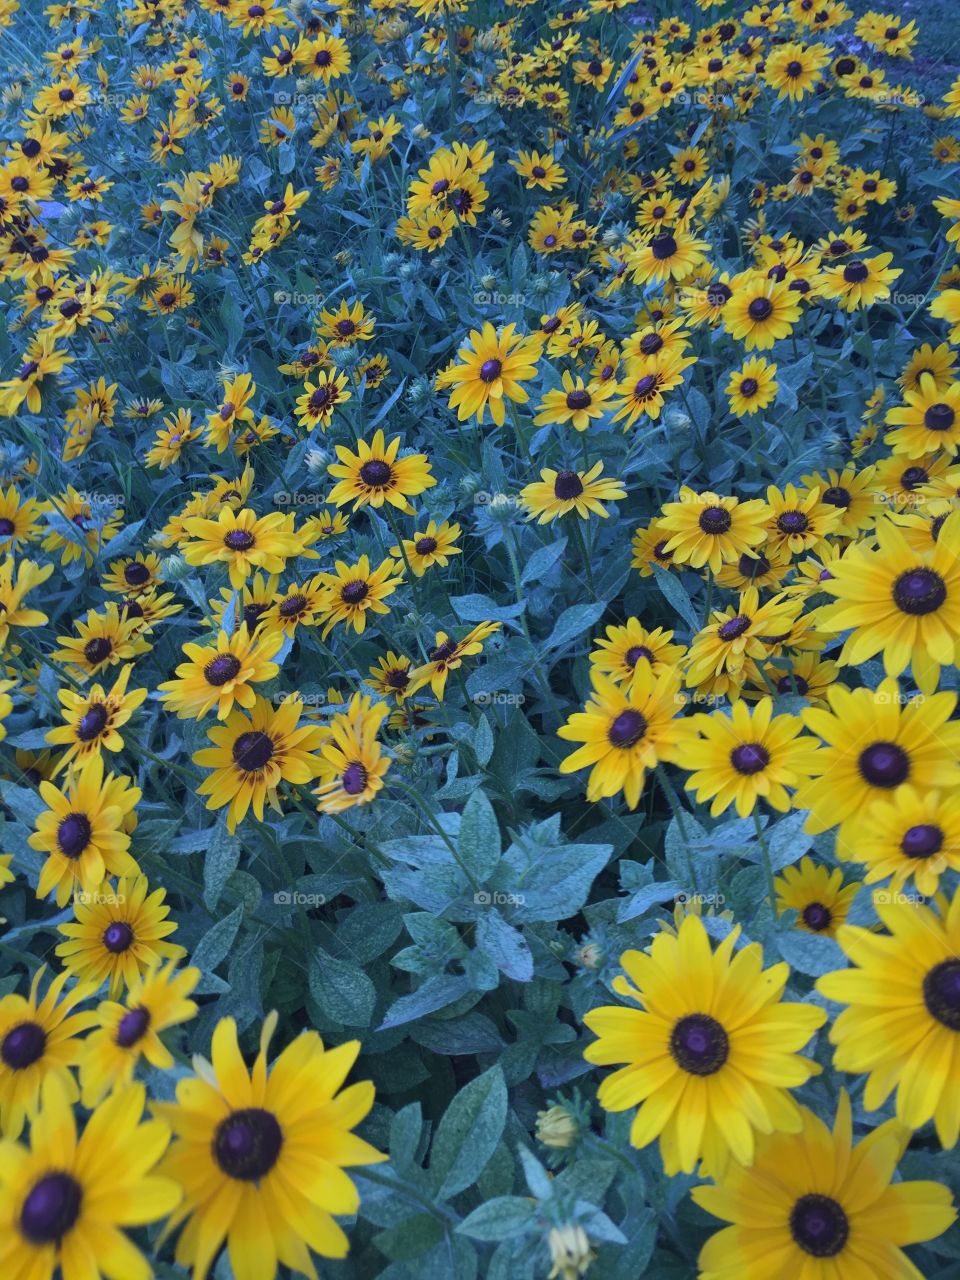 Sunflowers. Flowers